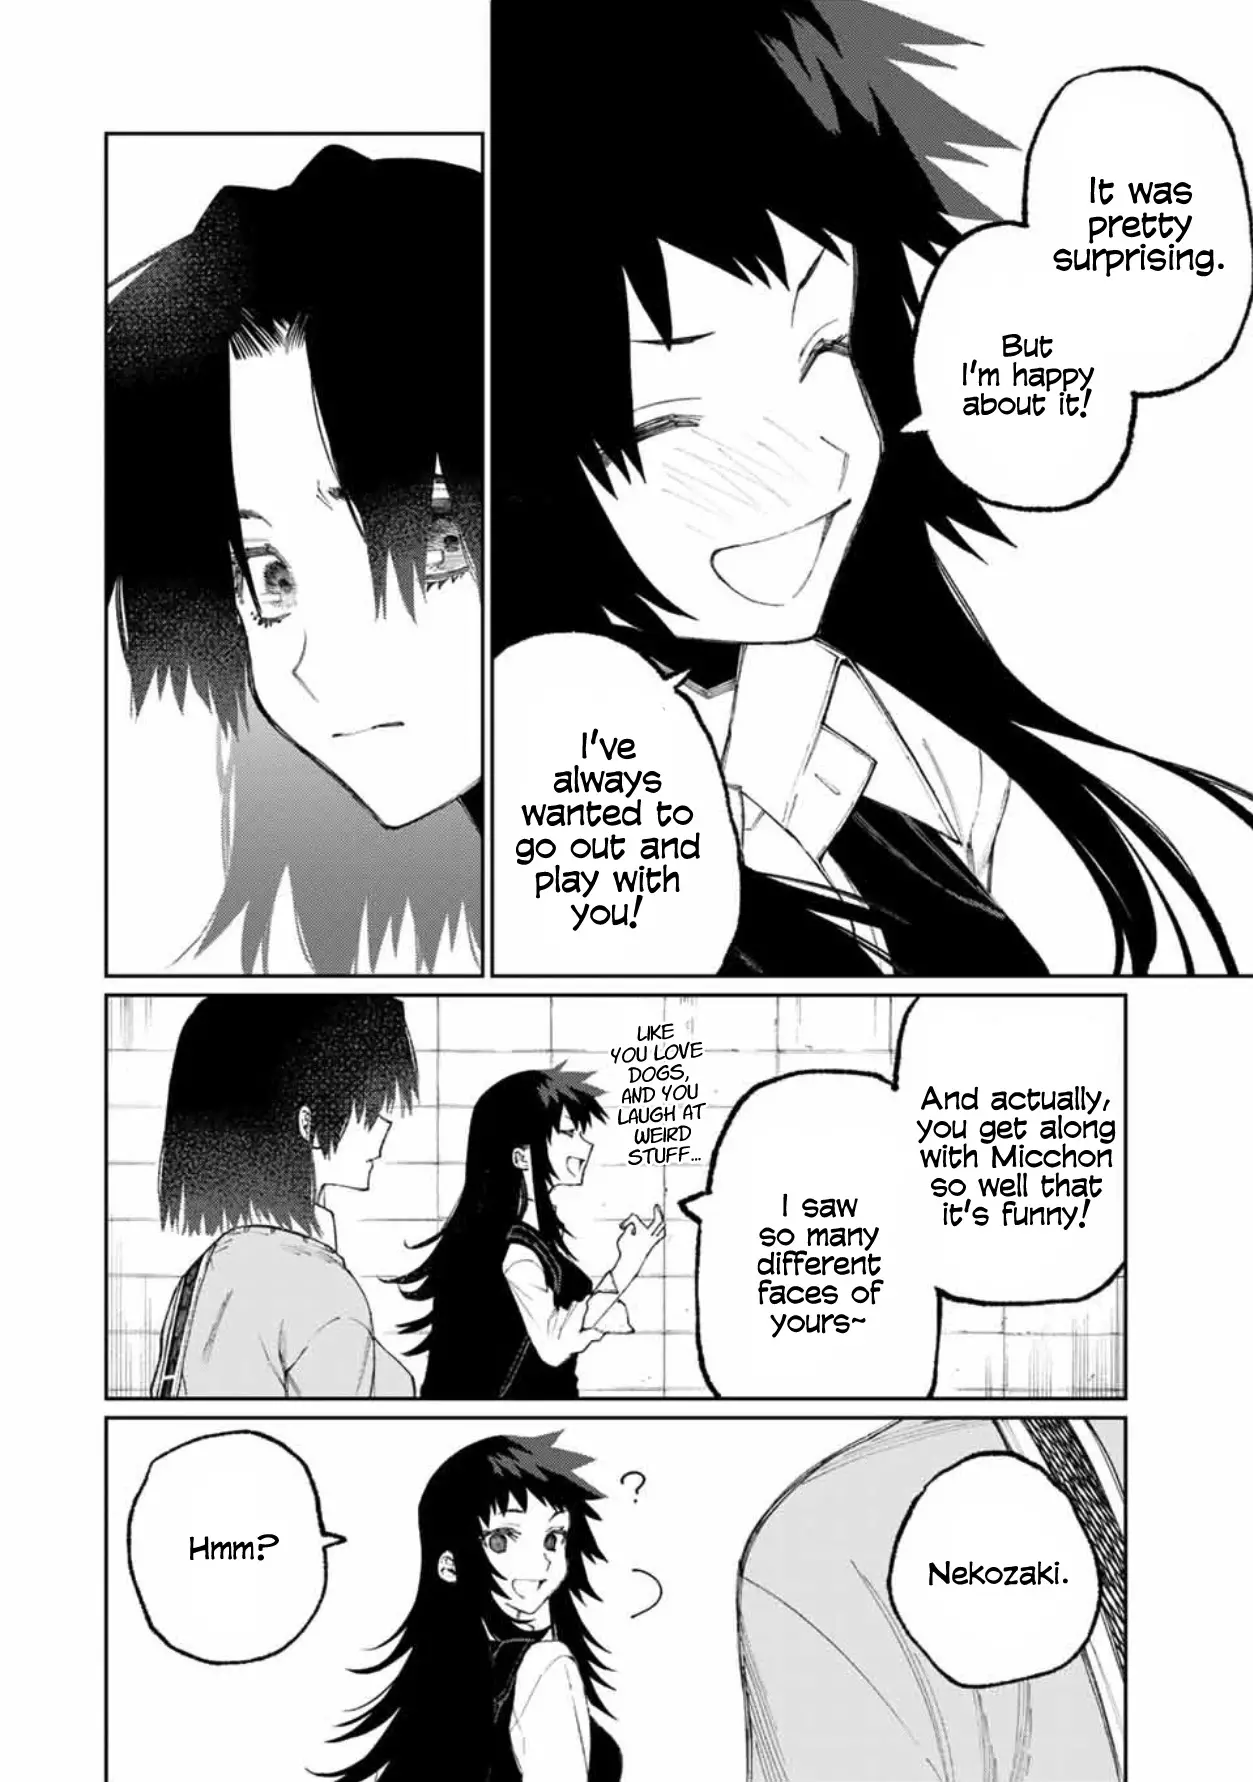 Shikimori's Not Just A Cutie - 48 page 9